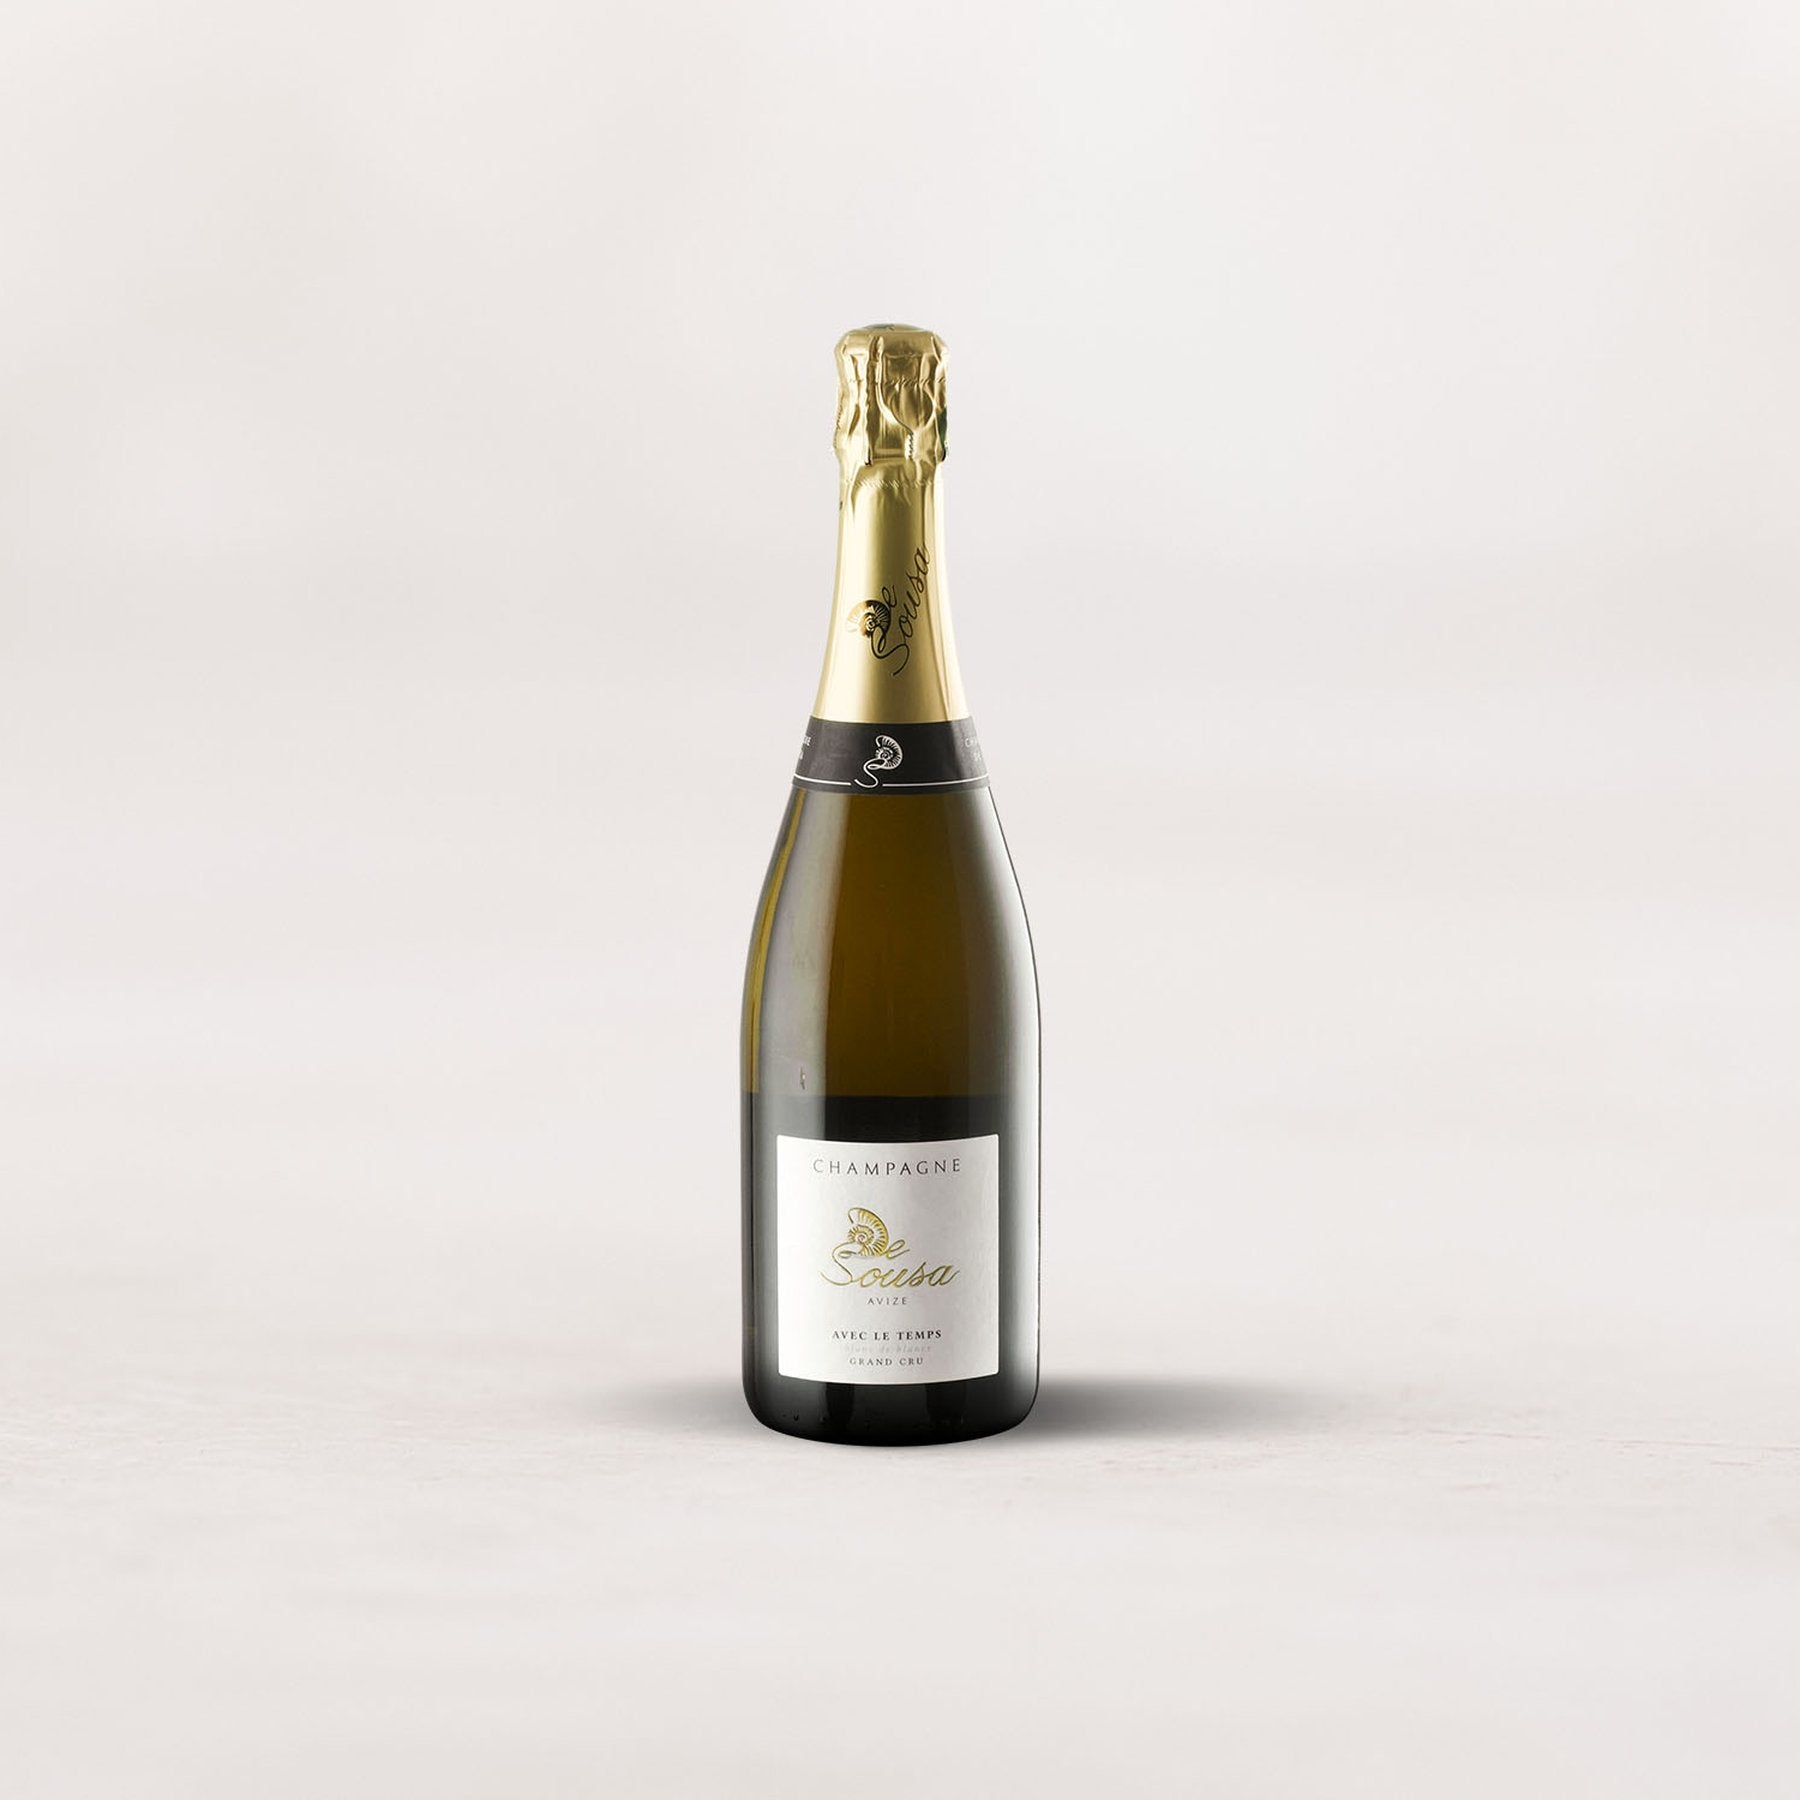 Champagne De Sousa, Grand Cru Blanc de Blancs “Avec Le Temps”